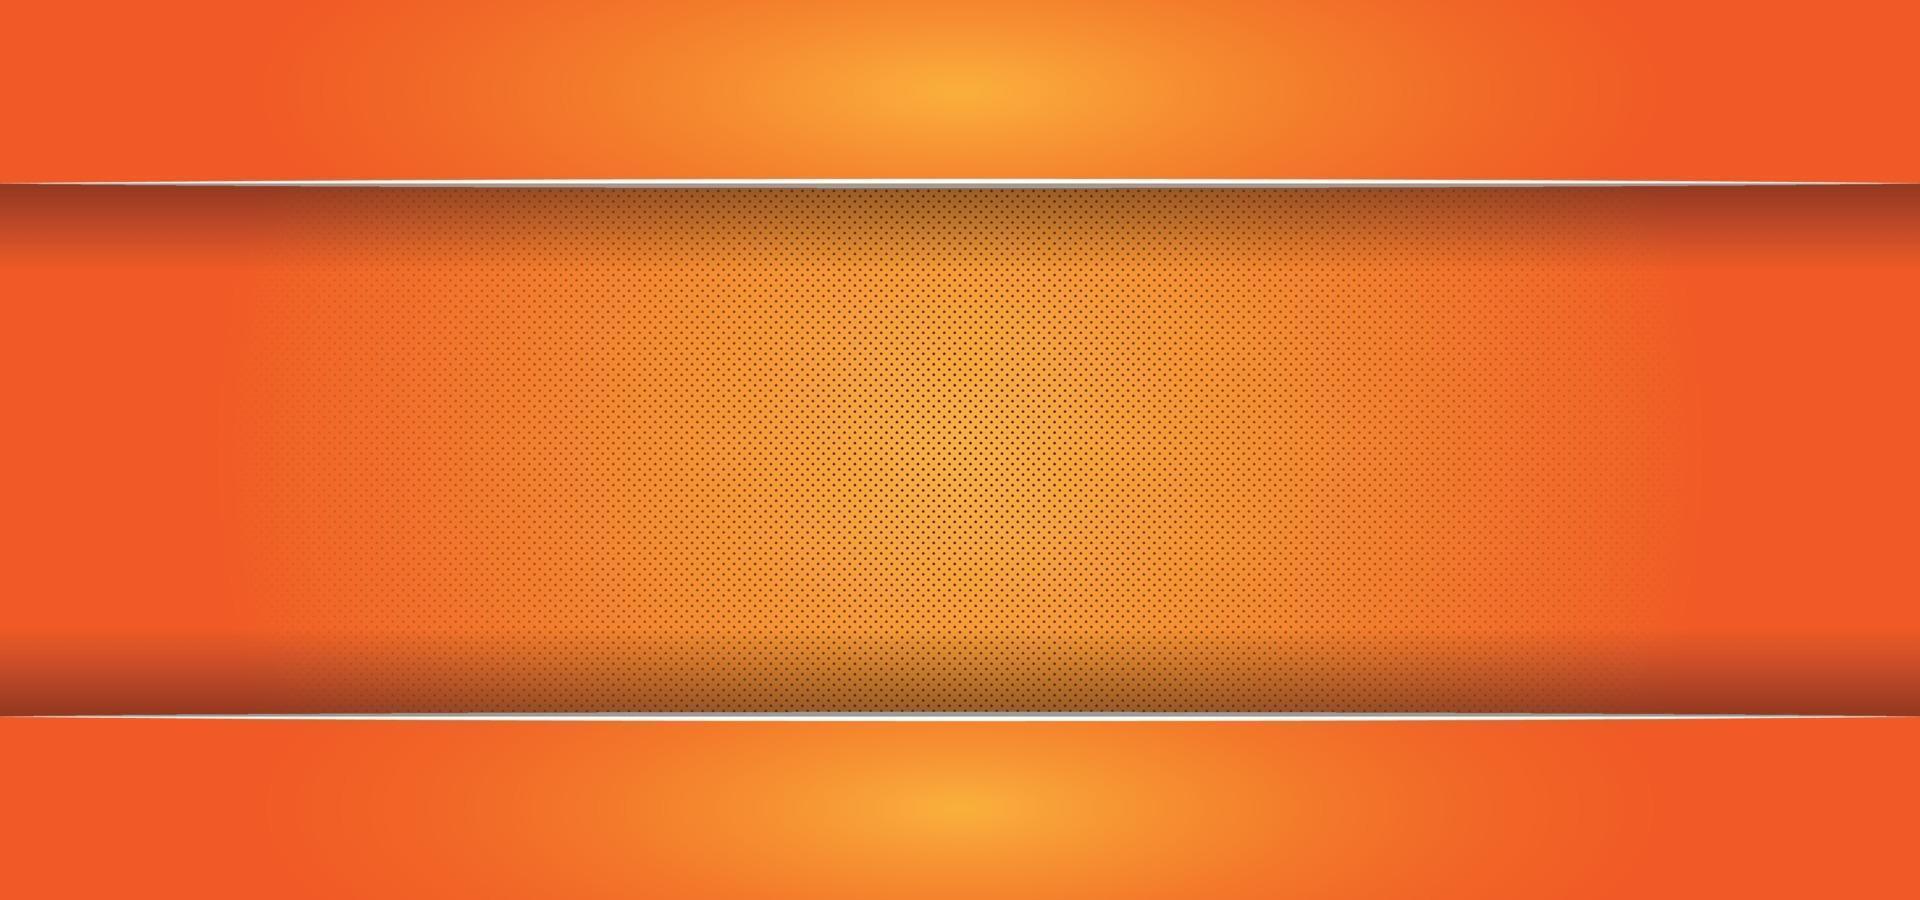 hermoso fondo naranja brillante o banner vector